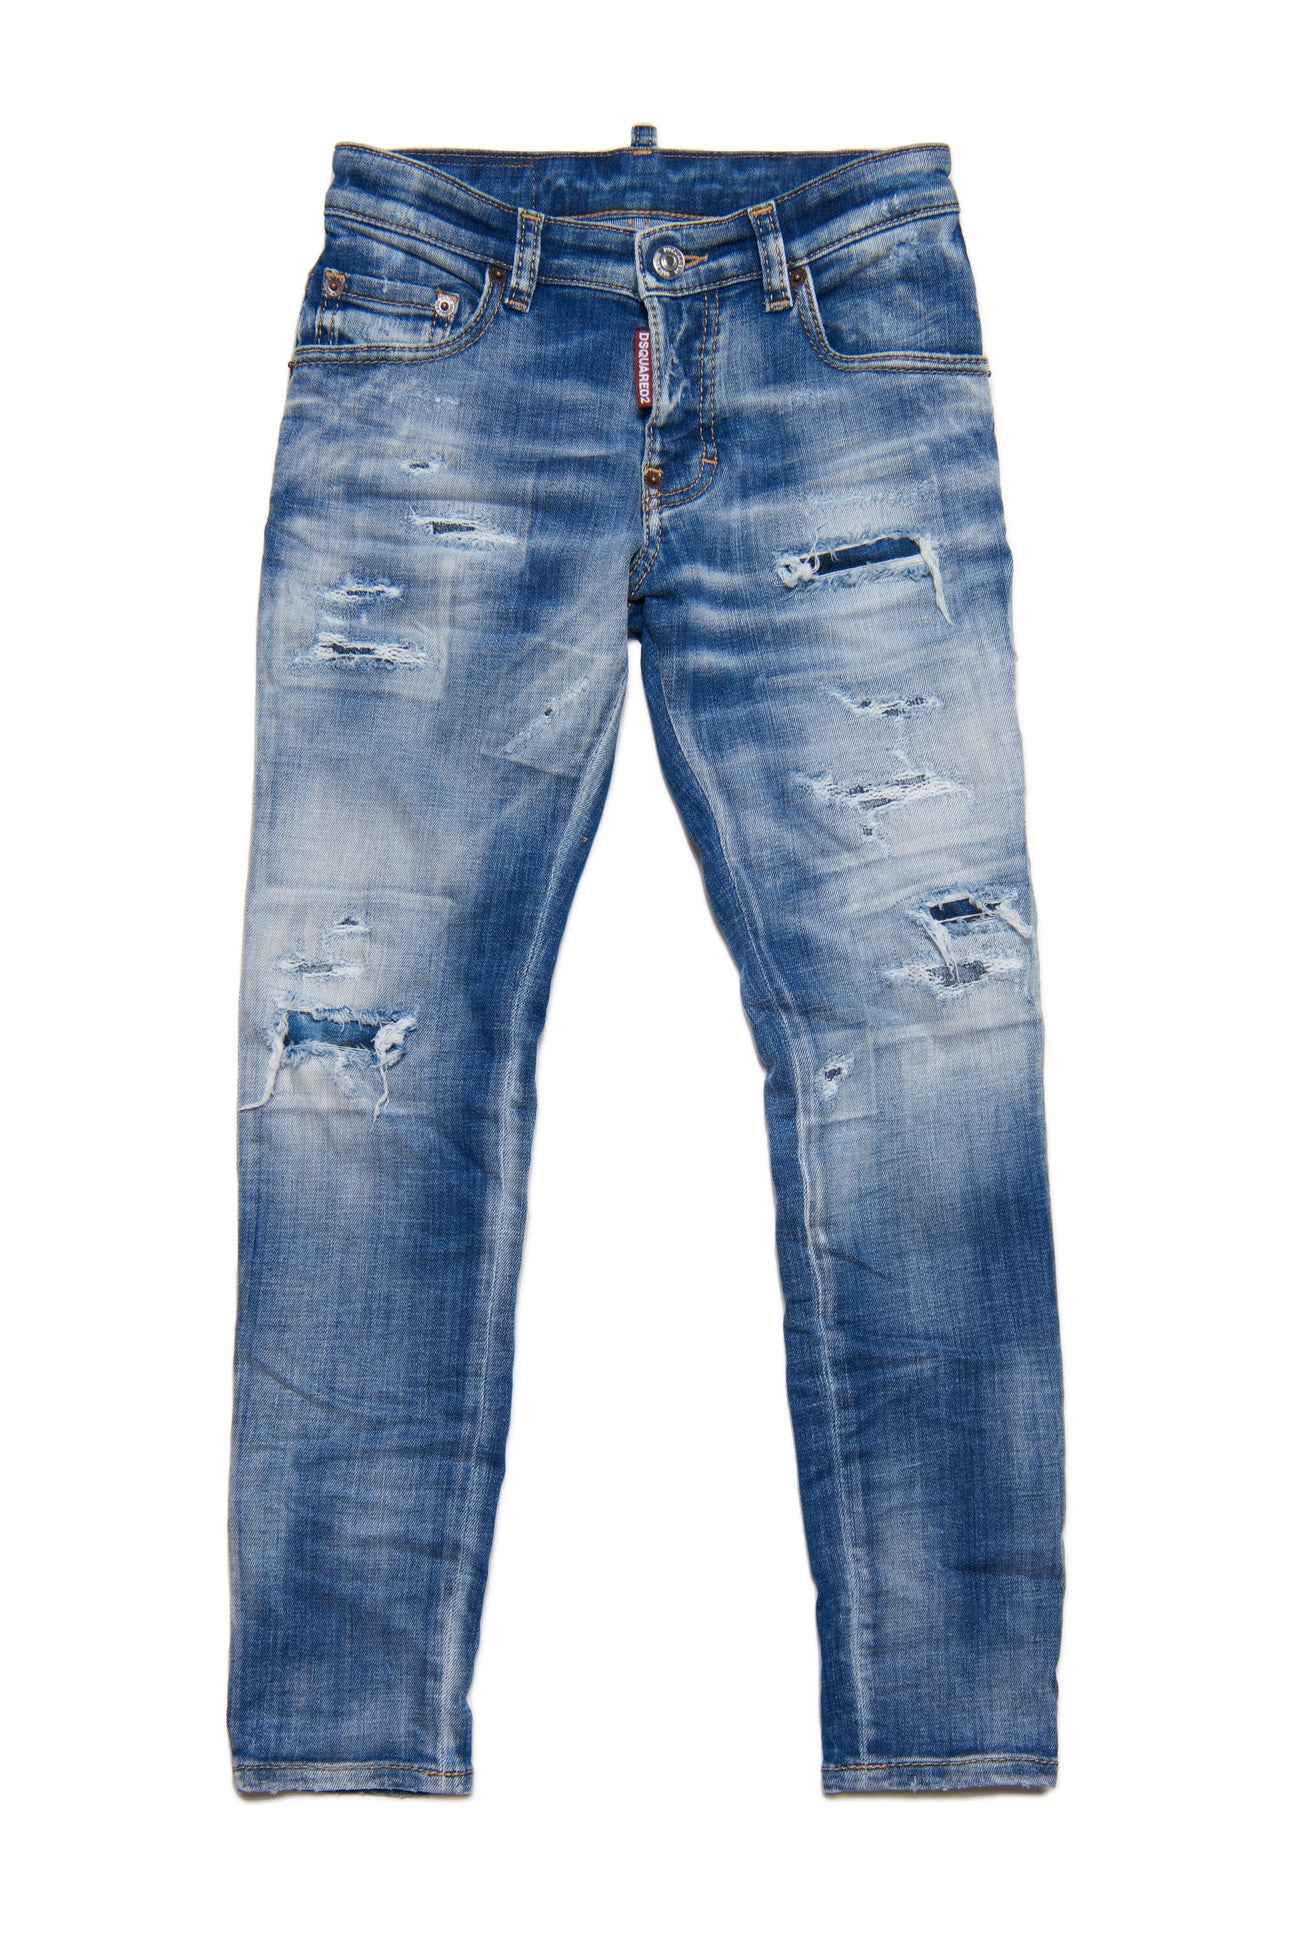 Jeans Skater skinny blu chiaro sfumato con rotture 